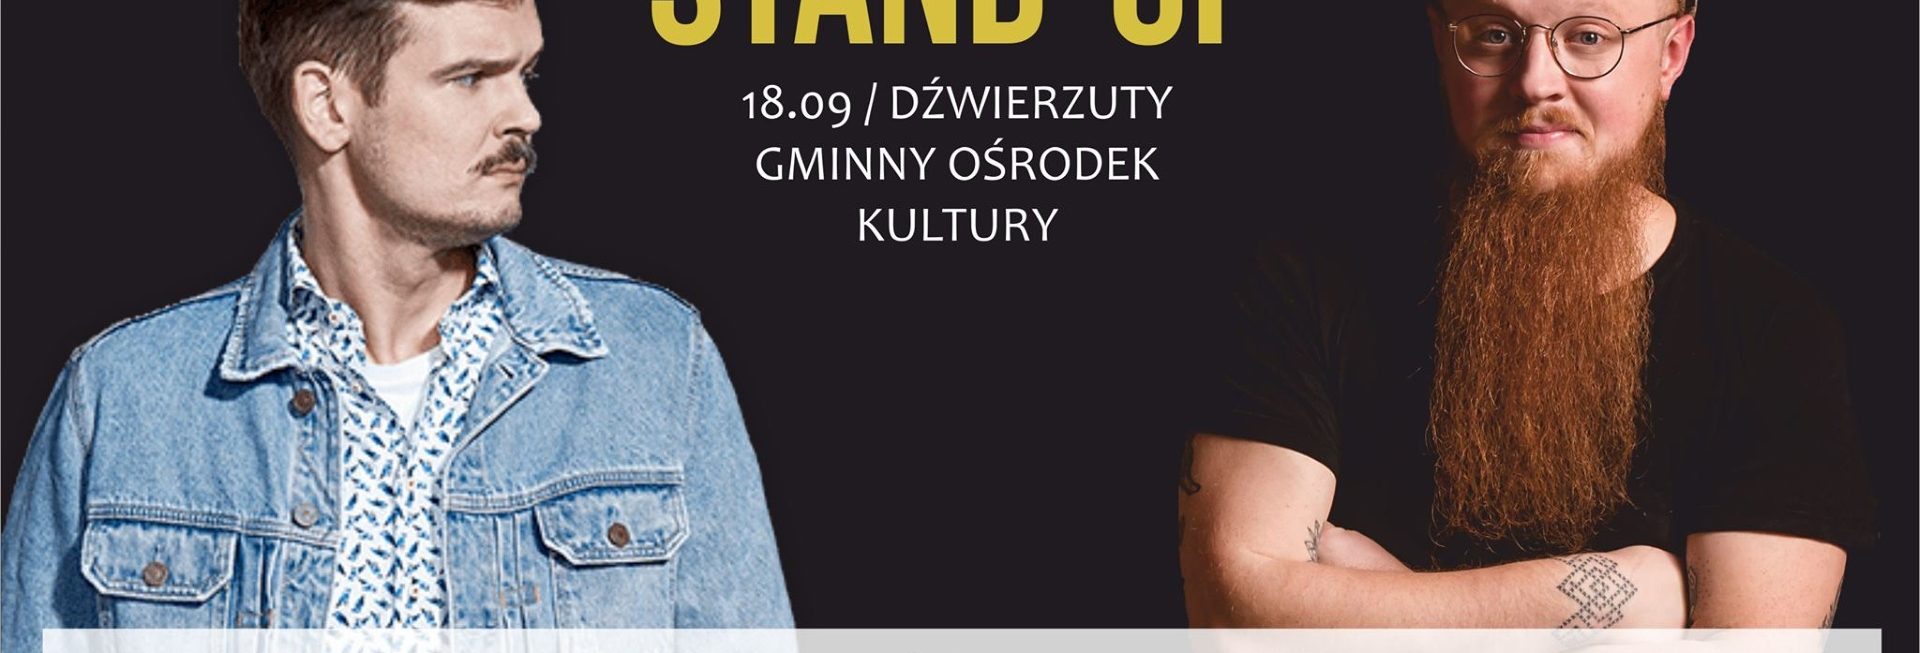 Plakat graficzny zapraszający do Dźwierzut na występ Stand-up – Maciek Adamczyk & Arkadiusz Jaksa Jakszewicz - Dźwierzuty 2021. Na plakacie zdjęcia obu komików.